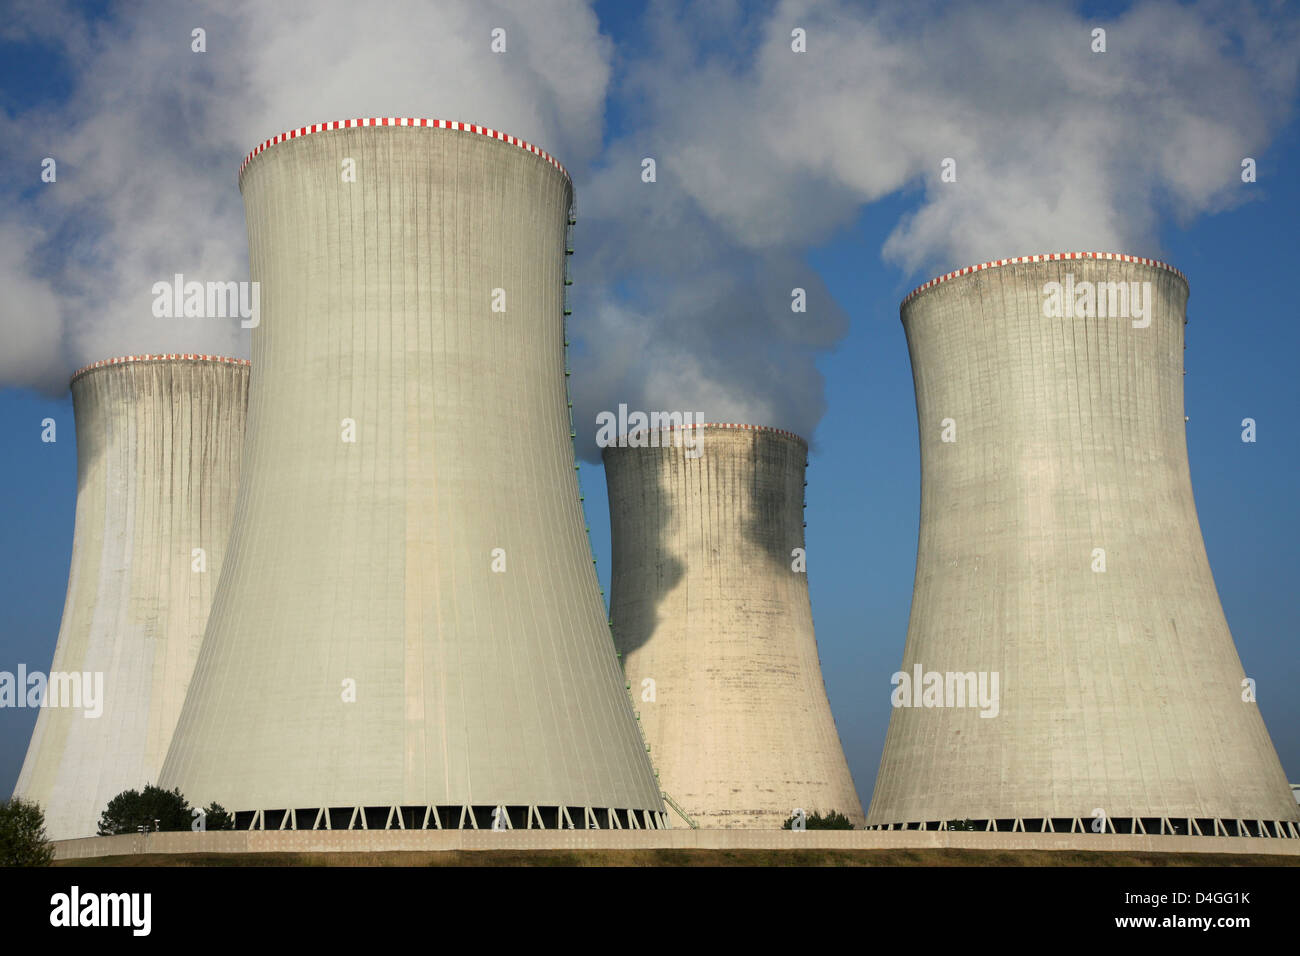 Detalle de las torres de enfriamiento de la planta de energía nuclear Foto de stock